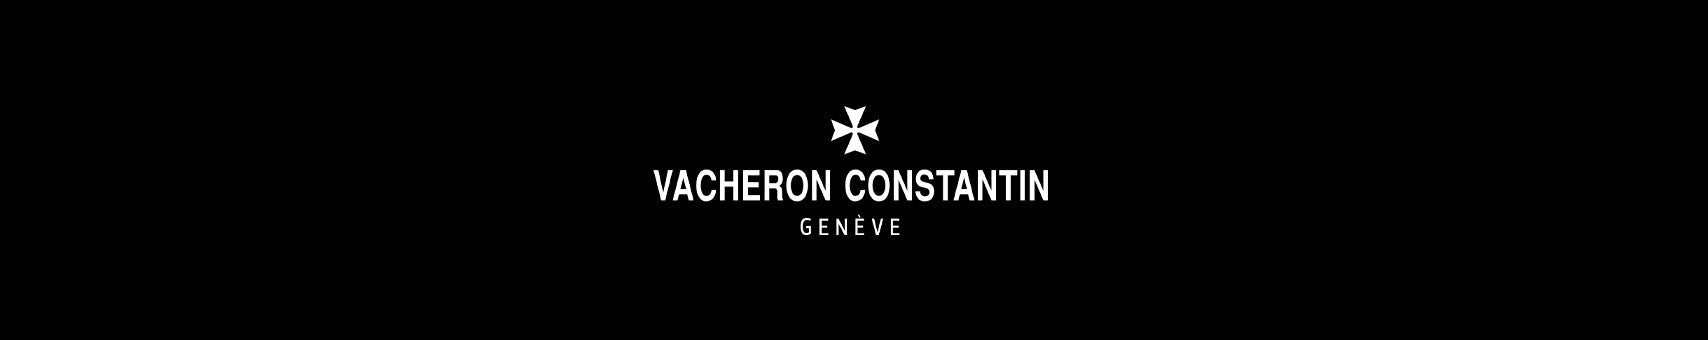 vacheron_constantin_logo